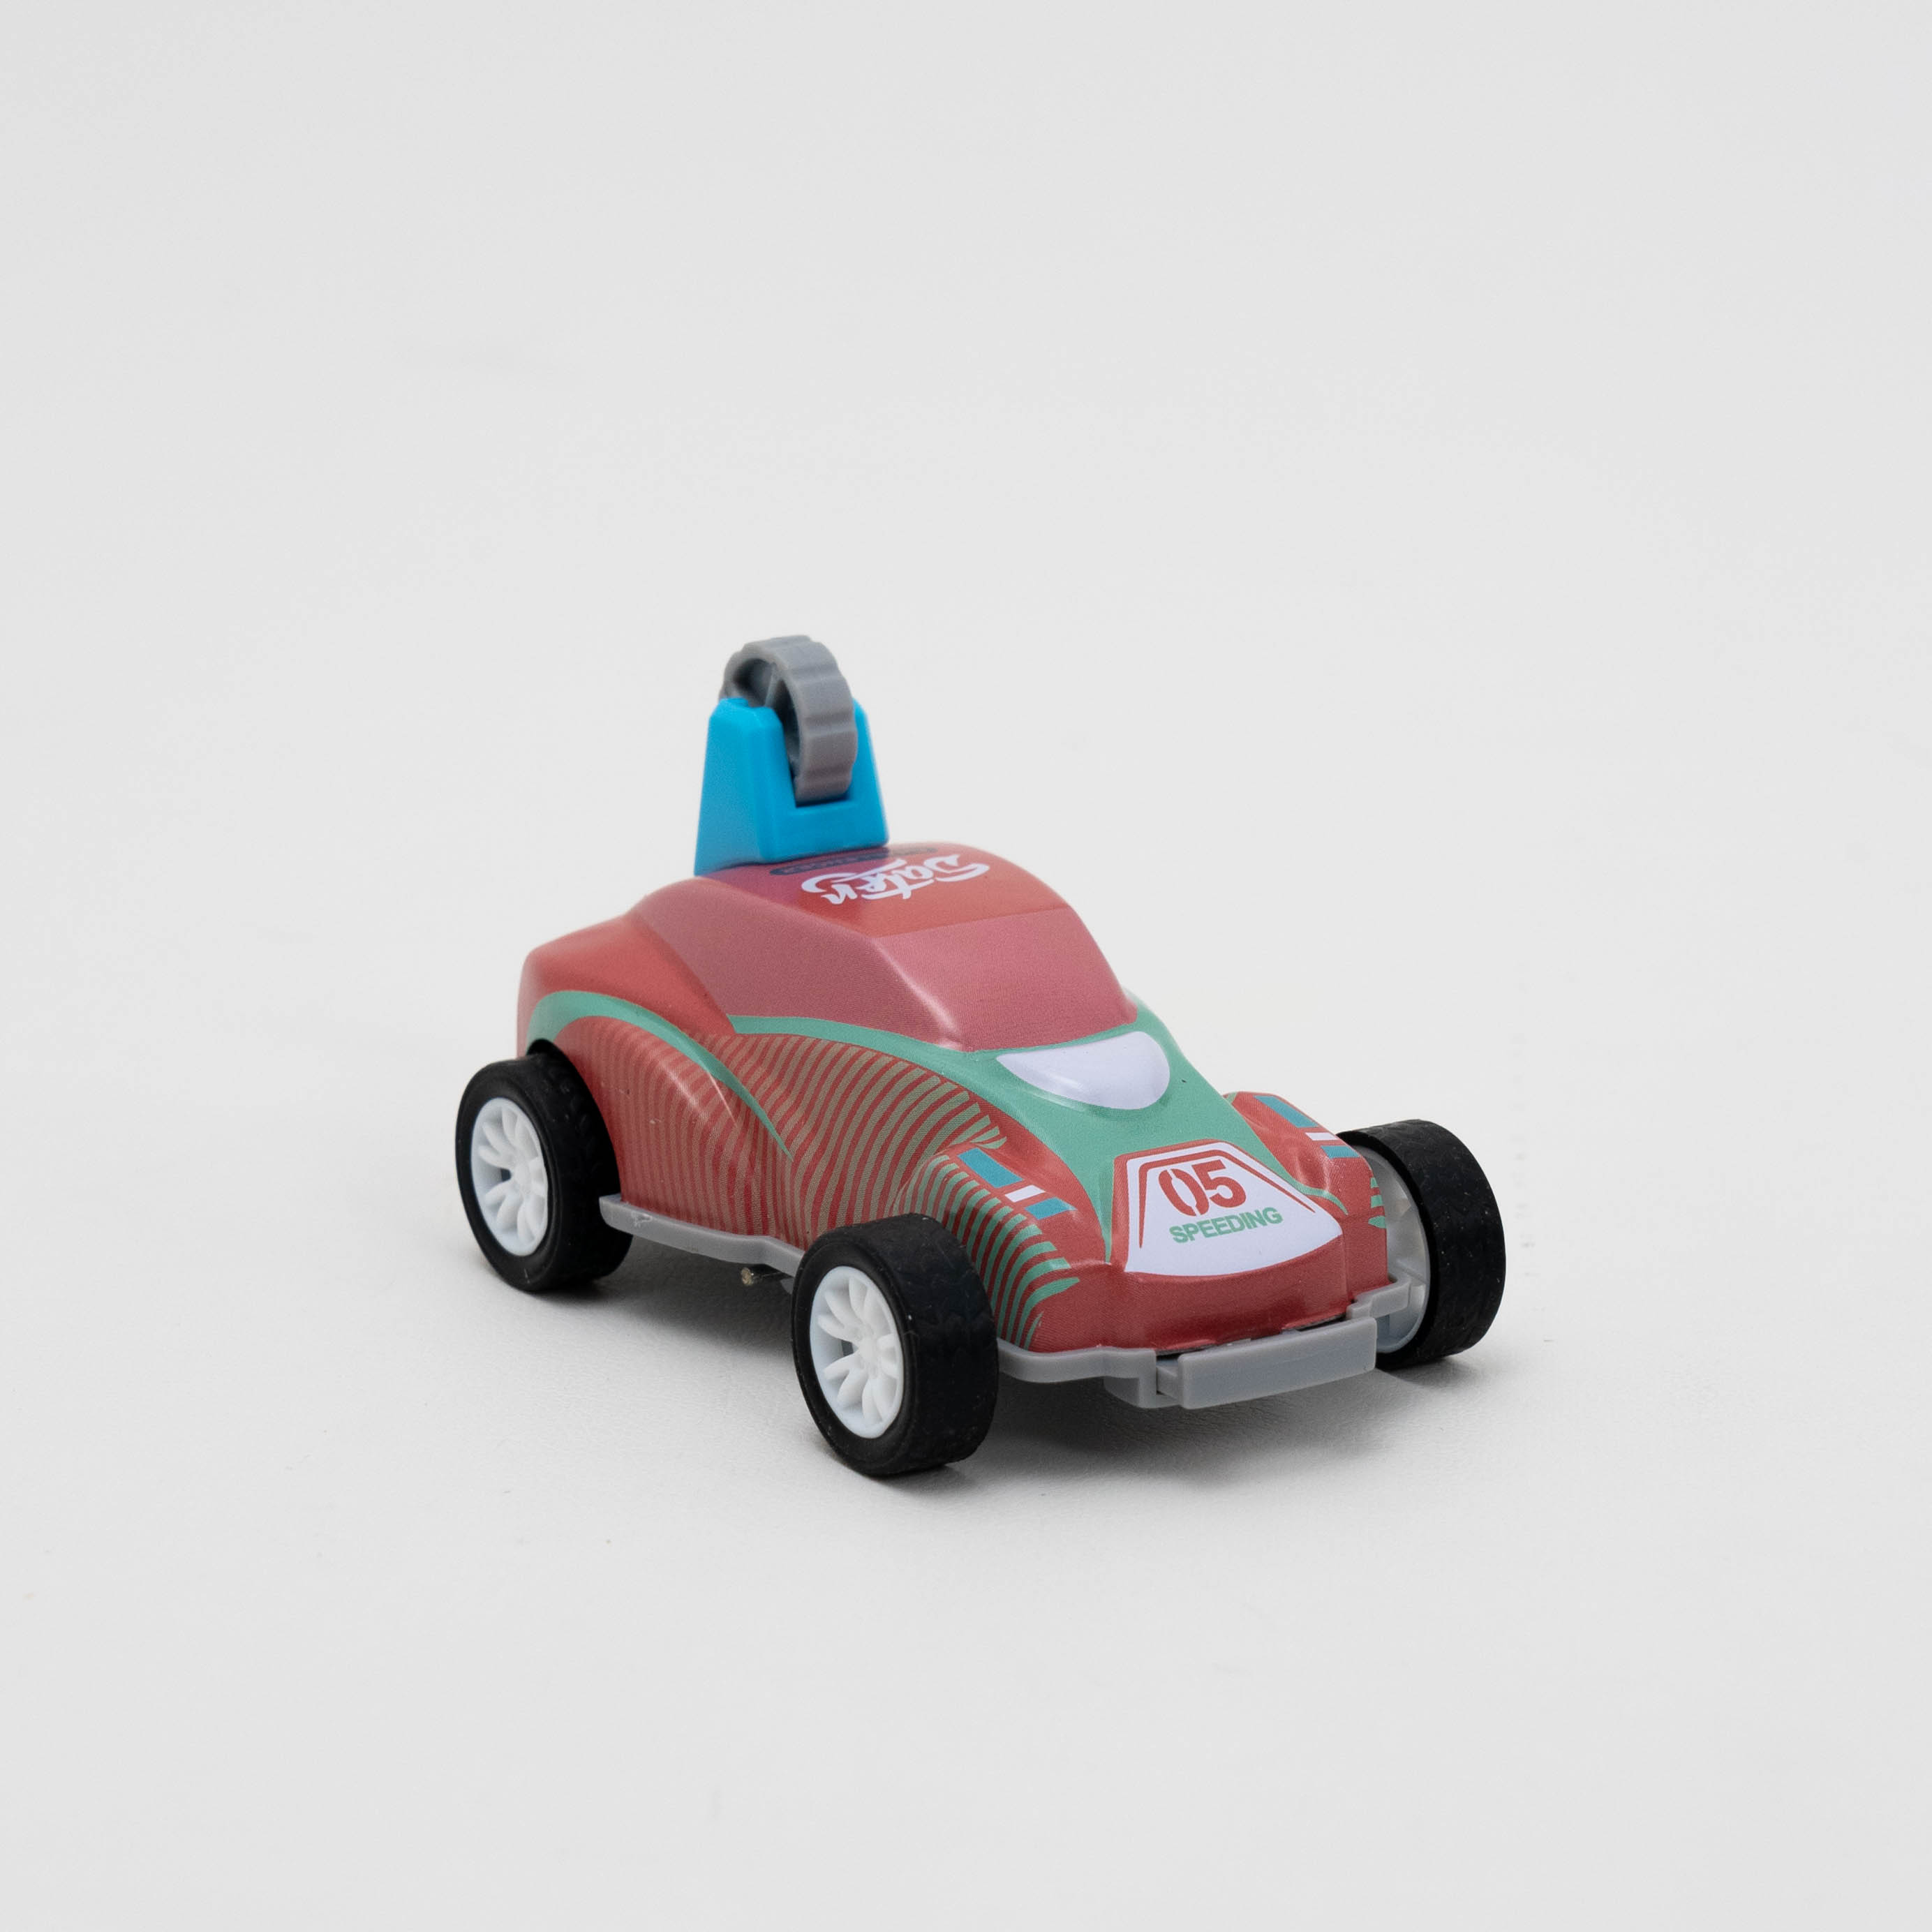 プルバック式の360度転げ回りの車おもちゃの4点セット｜リアルな色彩のコレクションアイテム！ランダムで発送させる|undefined